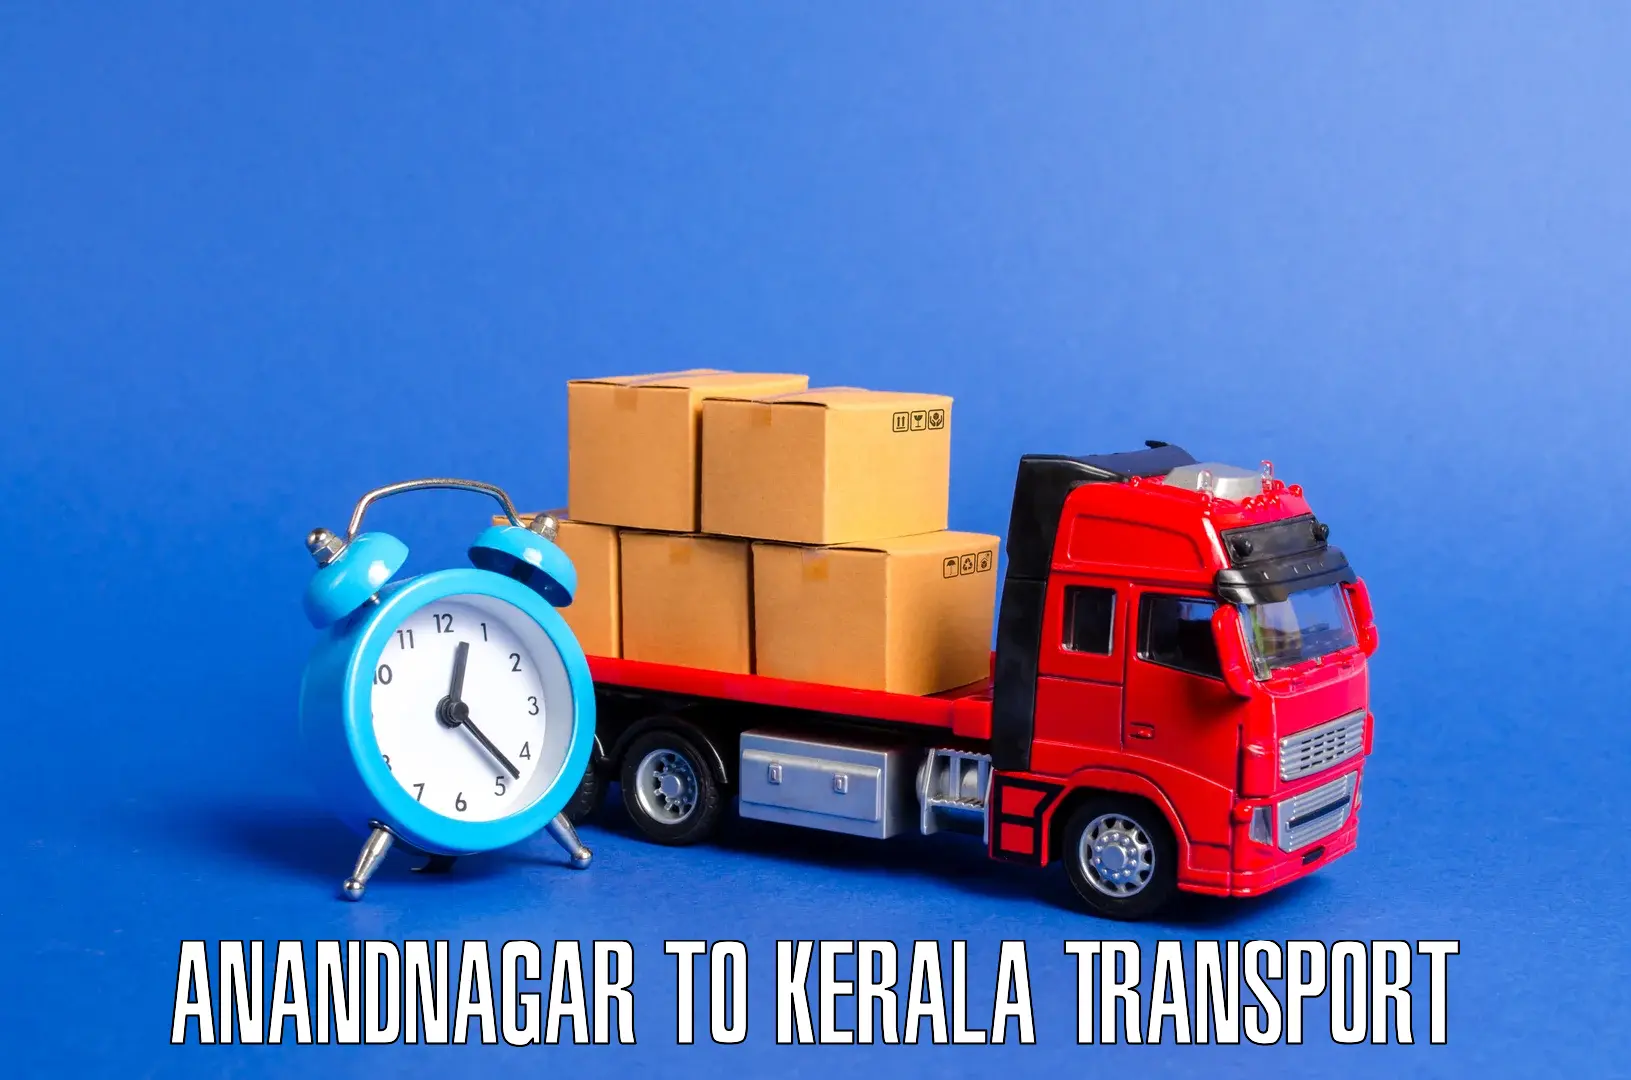 Online transport service Anandnagar to Thodupuzha